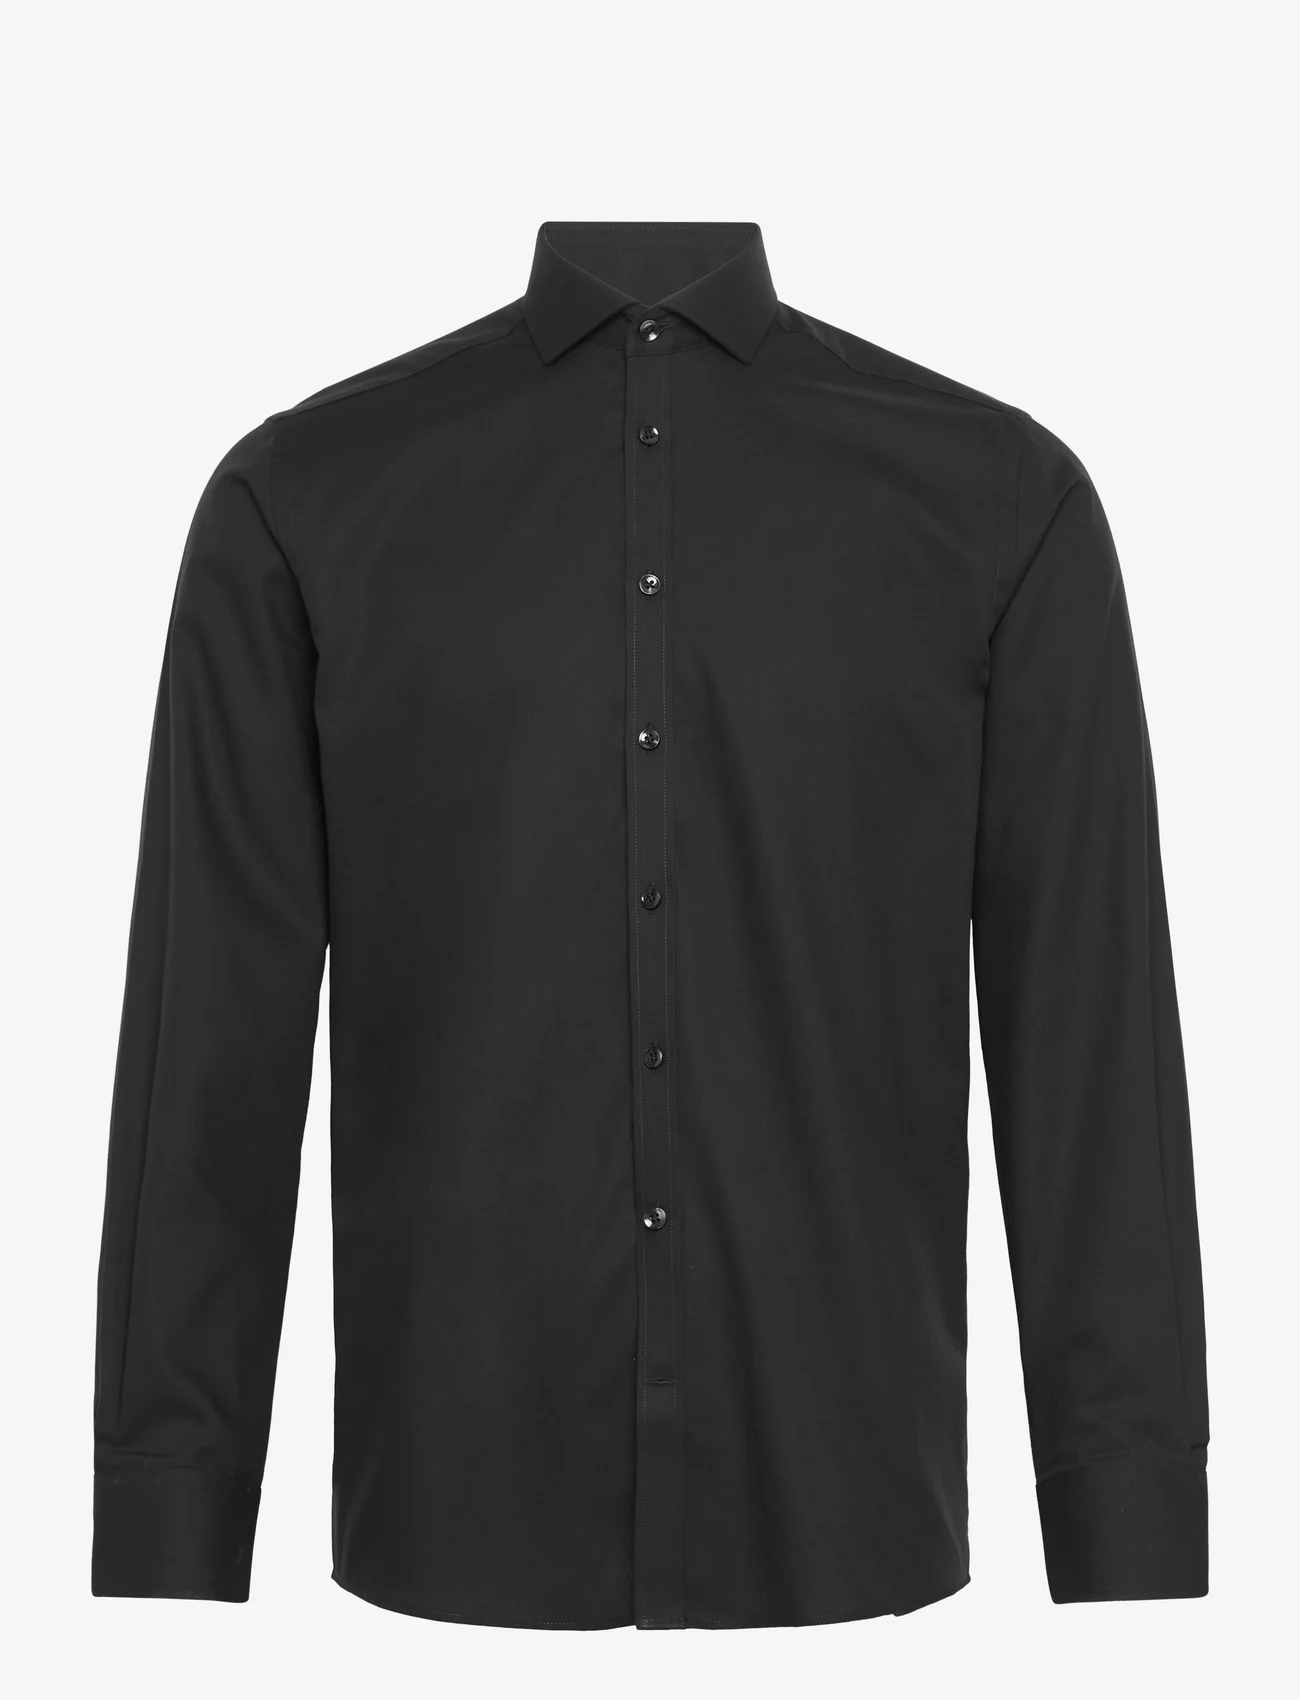 Bruun & Stengade - BS Bratton modern fit shirt - dalykinio stiliaus marškiniai - 2202-16044-200 - 0